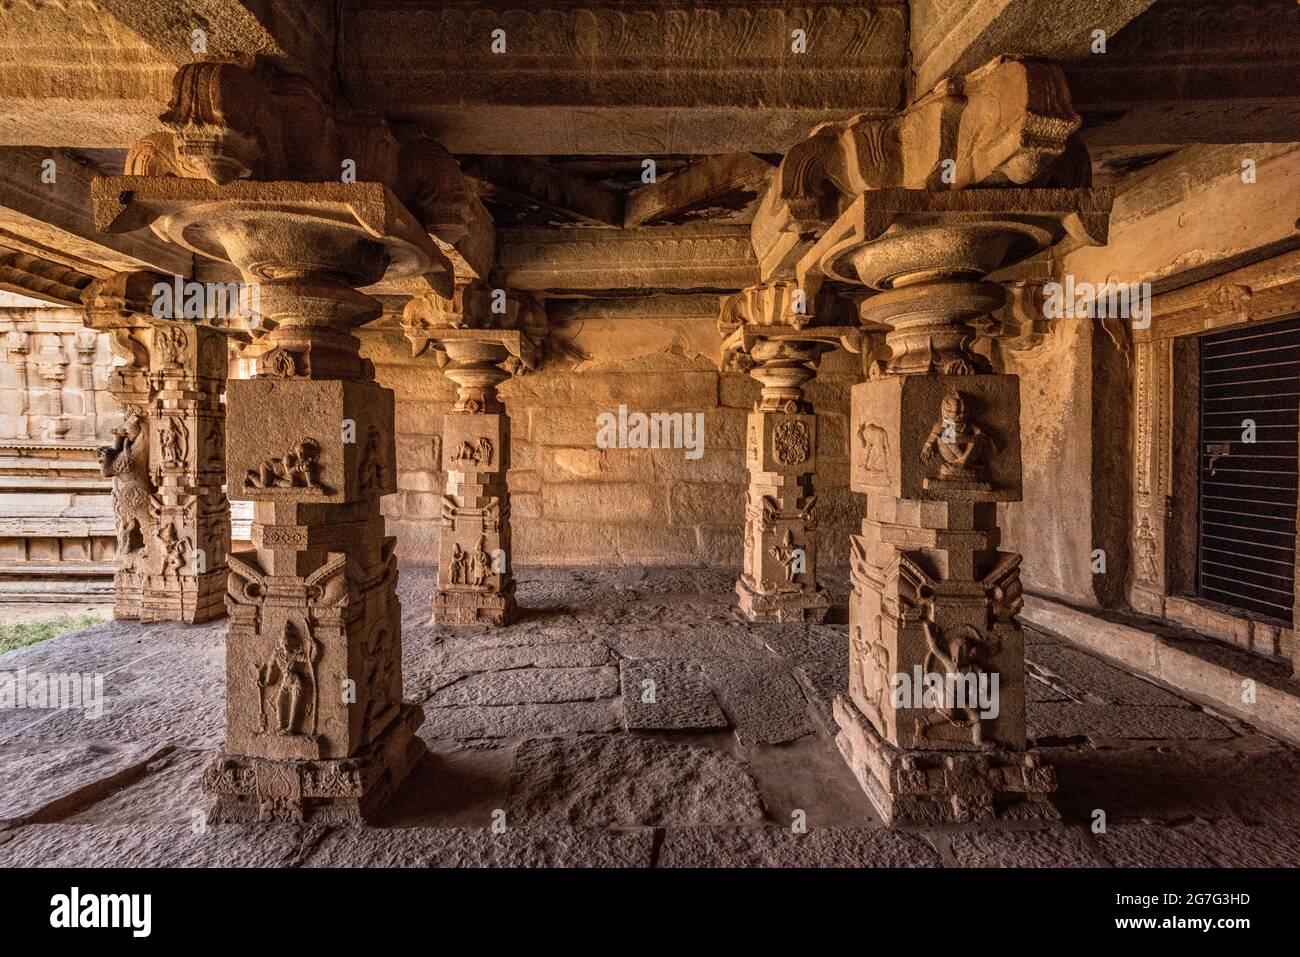 The view of ancient Achyutaraya Temple. Group of ruins monuments at Hampi was the centre of the Hindu Vijayanagara Empire, Hampi, Karnataka, India Stock Photo